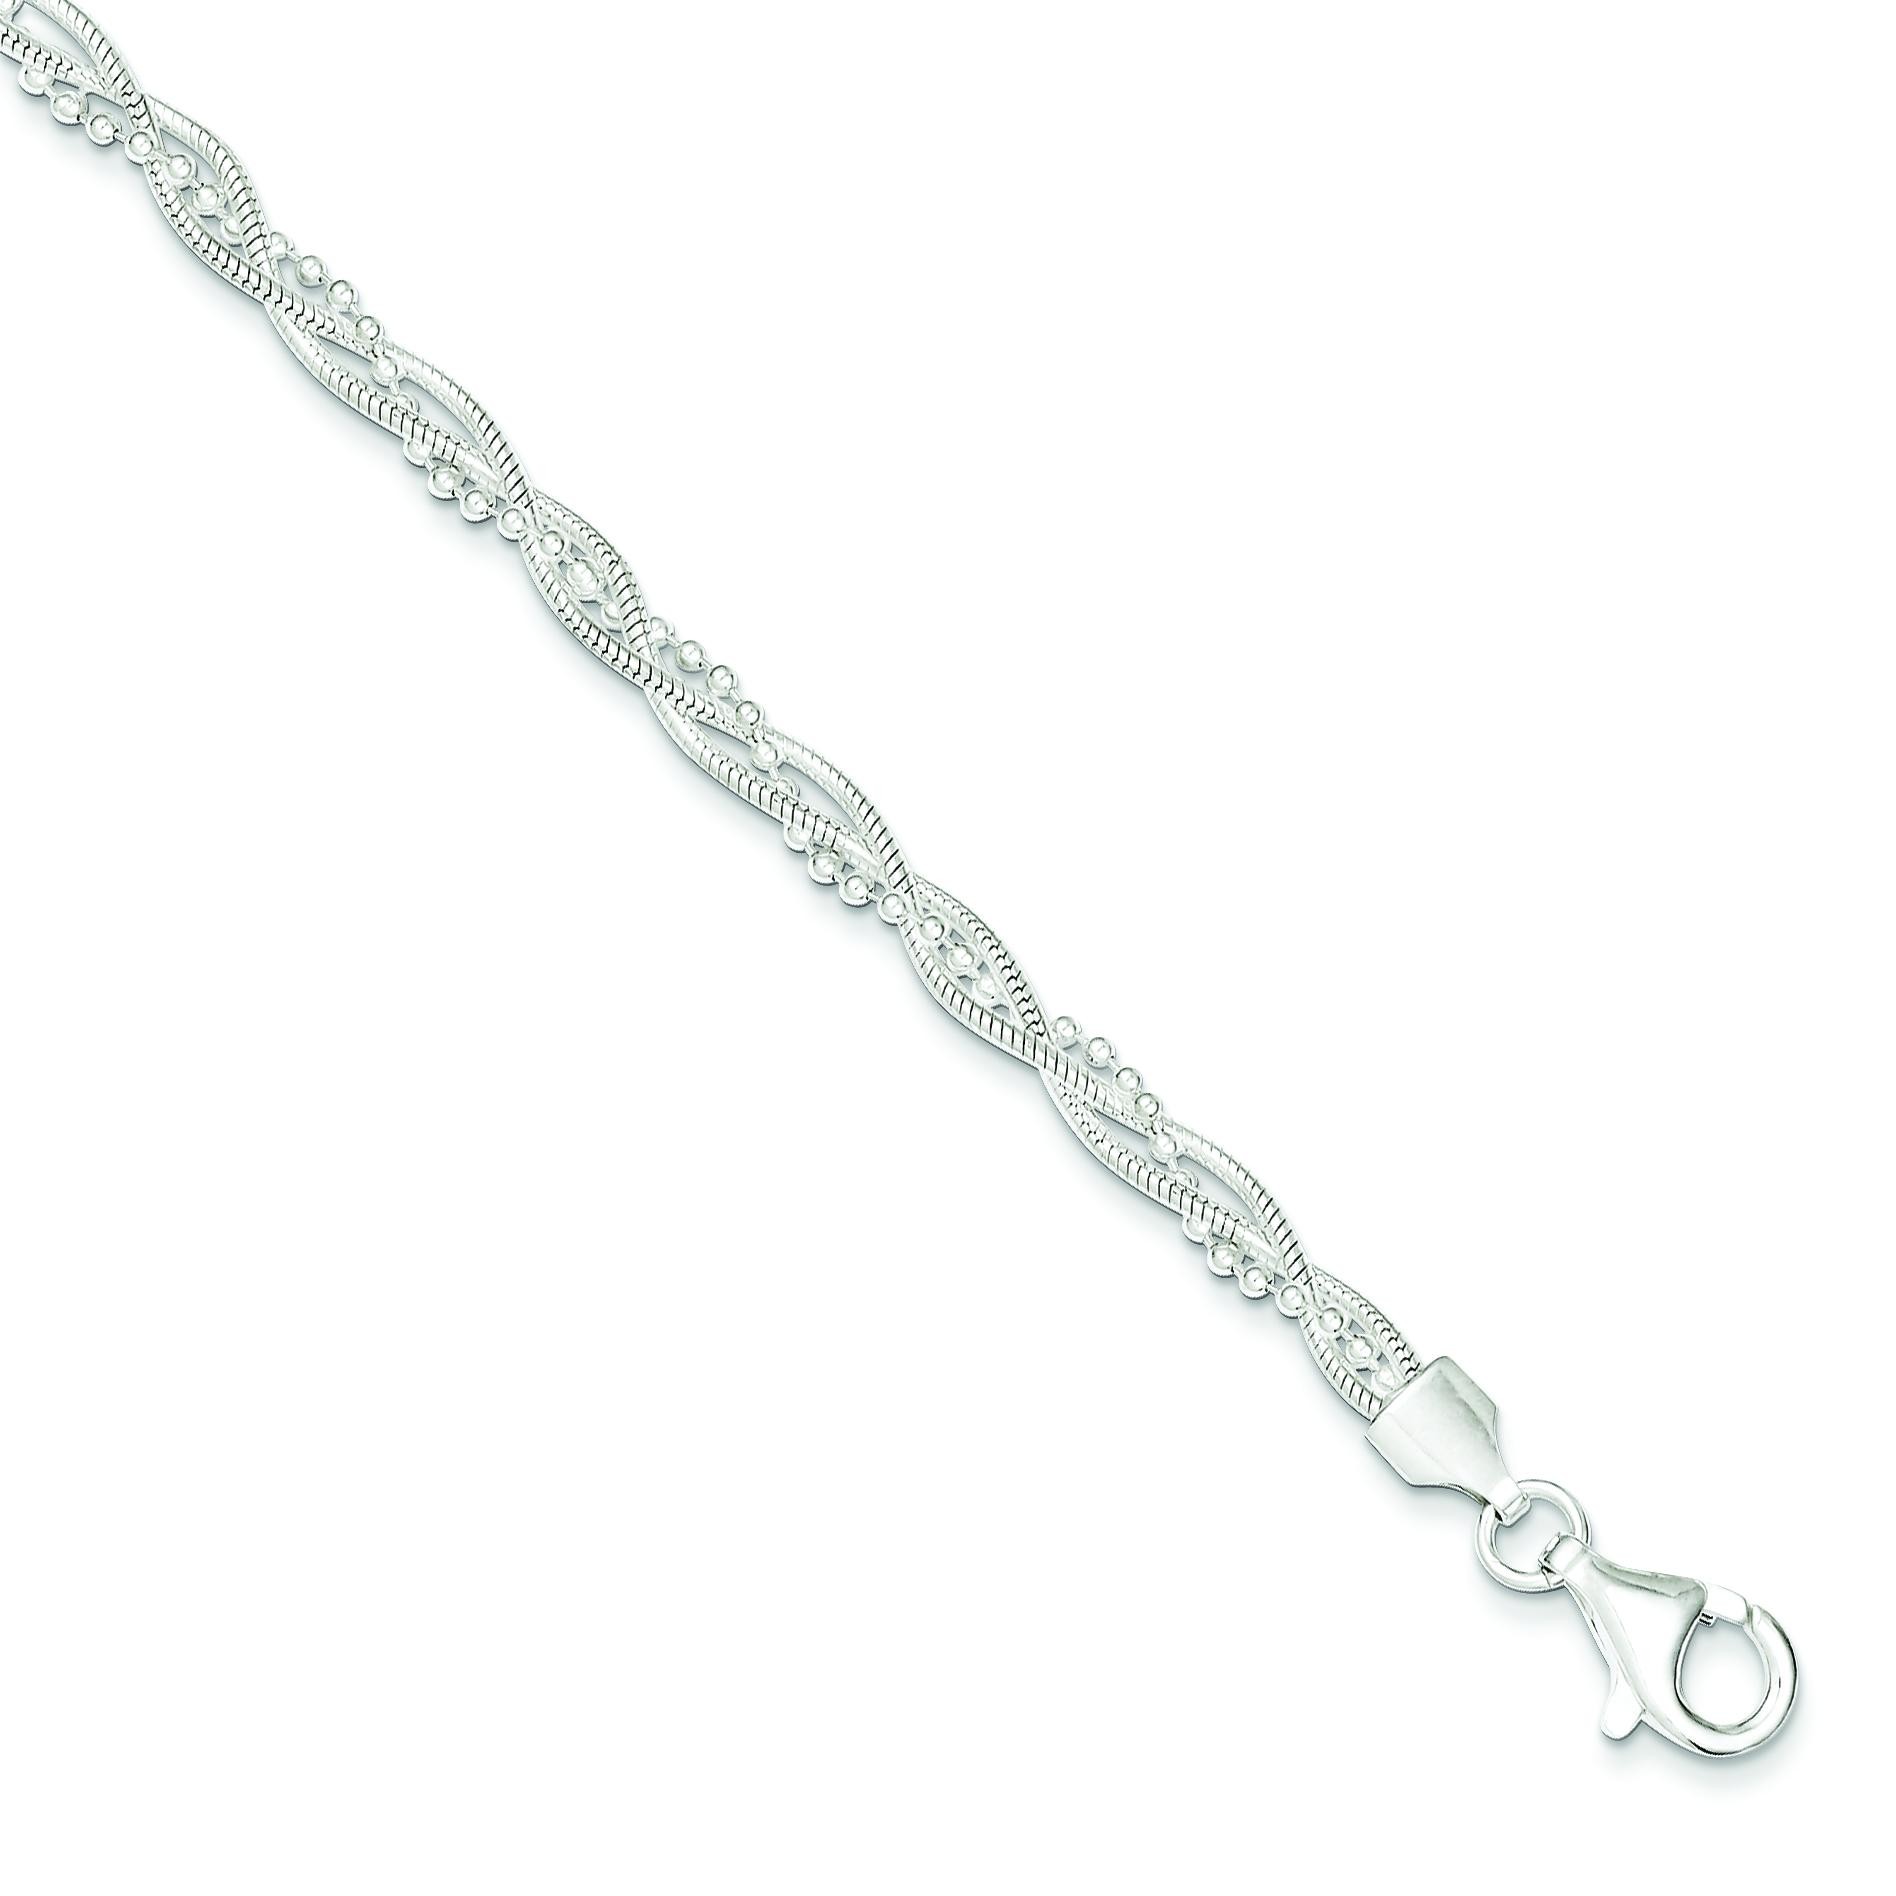 Fancy Braided Bracelet in Sterling Silver